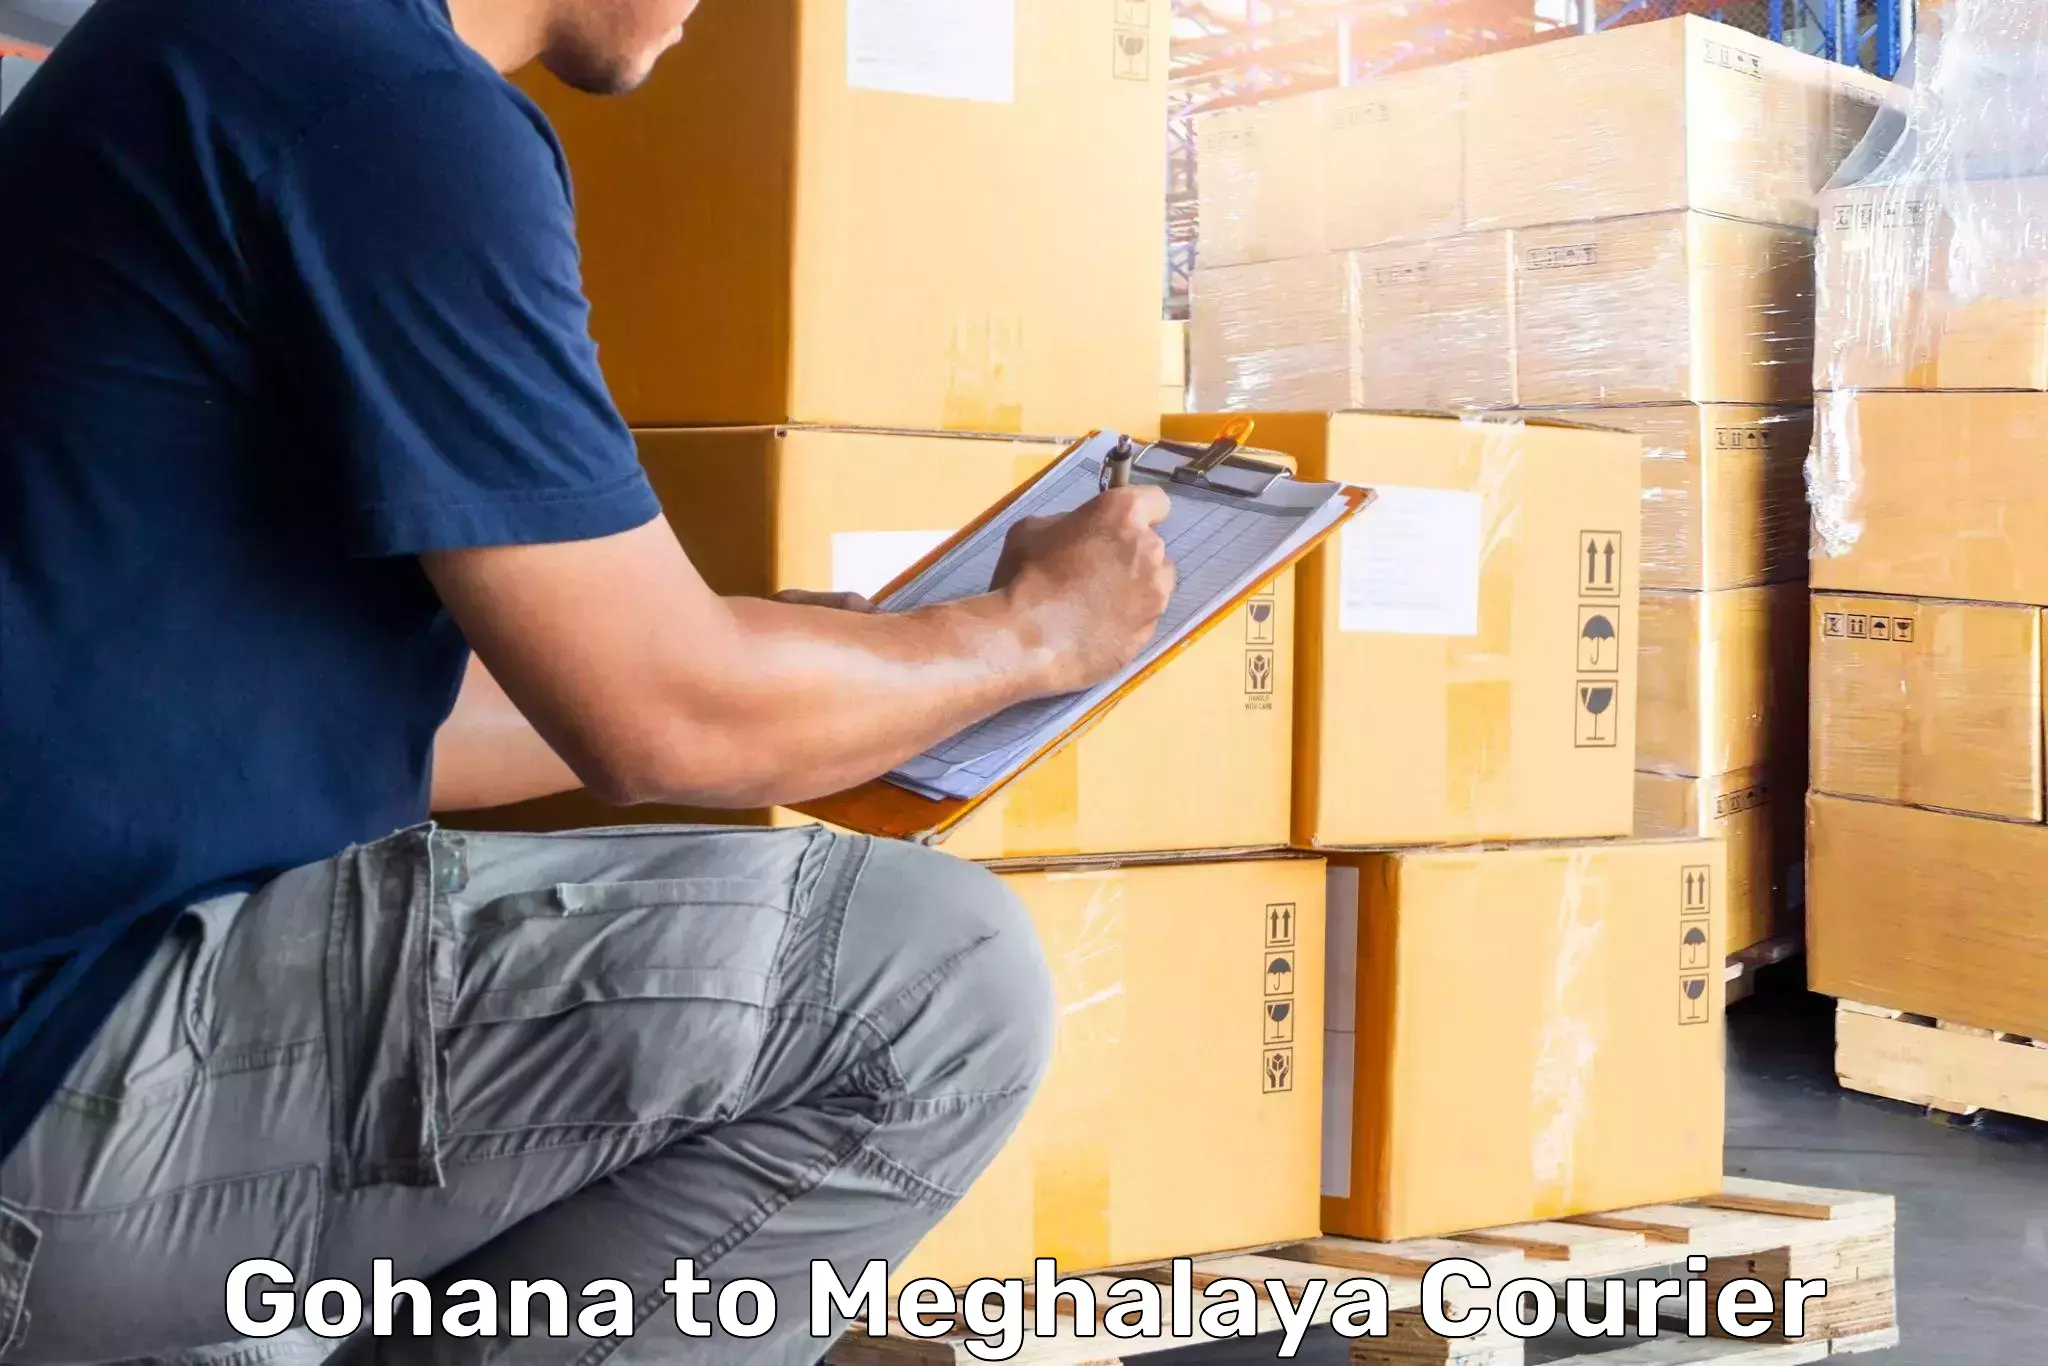 High-quality baggage shipment Gohana to Meghalaya